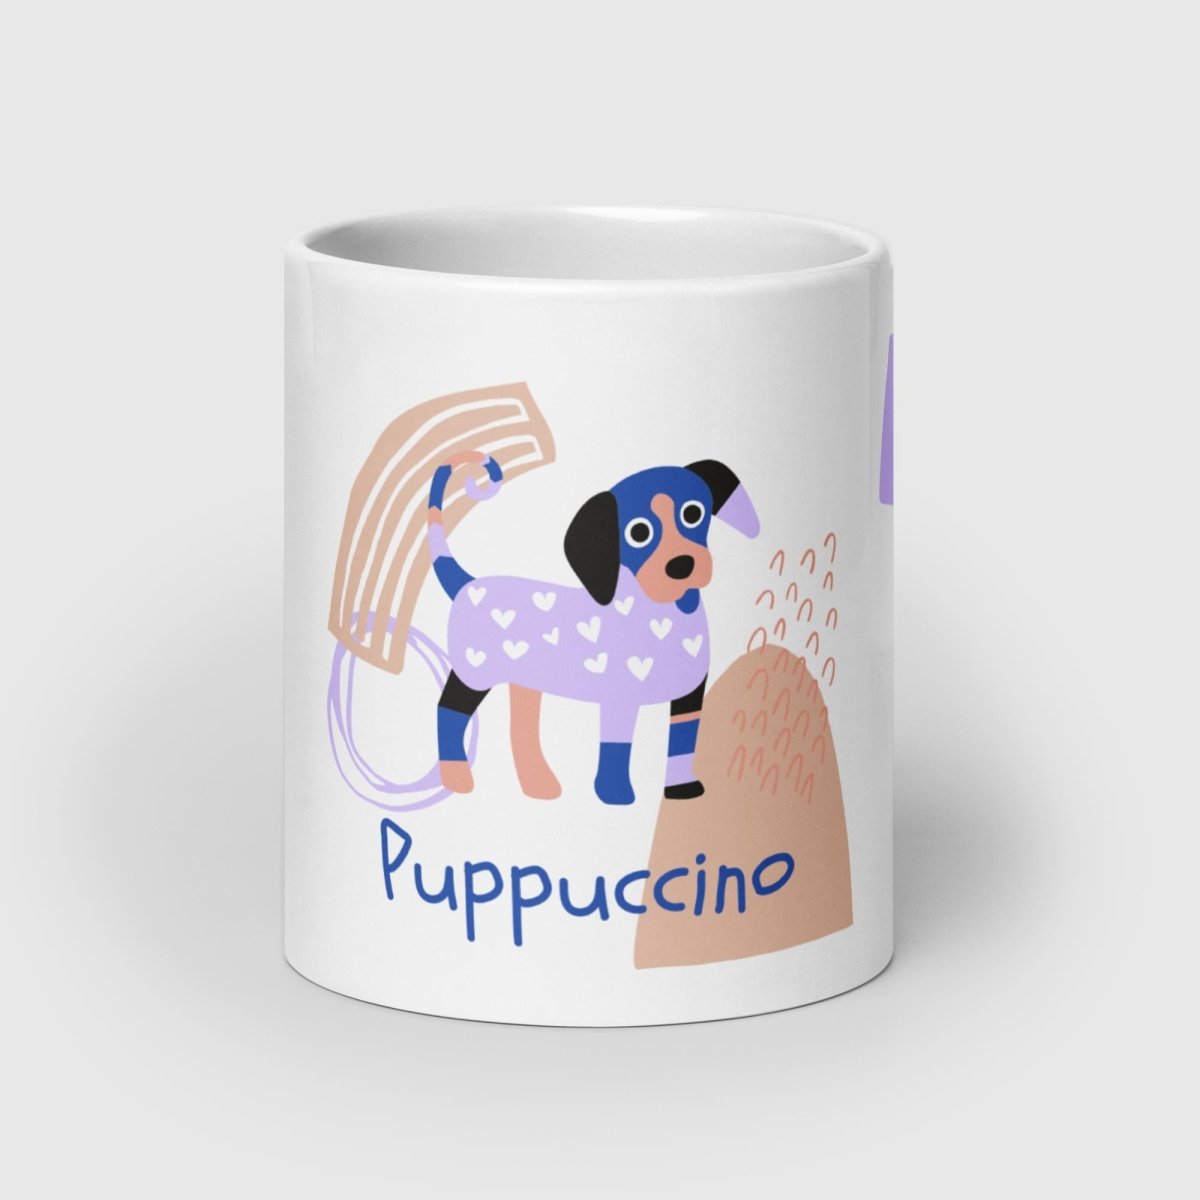 Puppuccino Mug - Funny Nikko